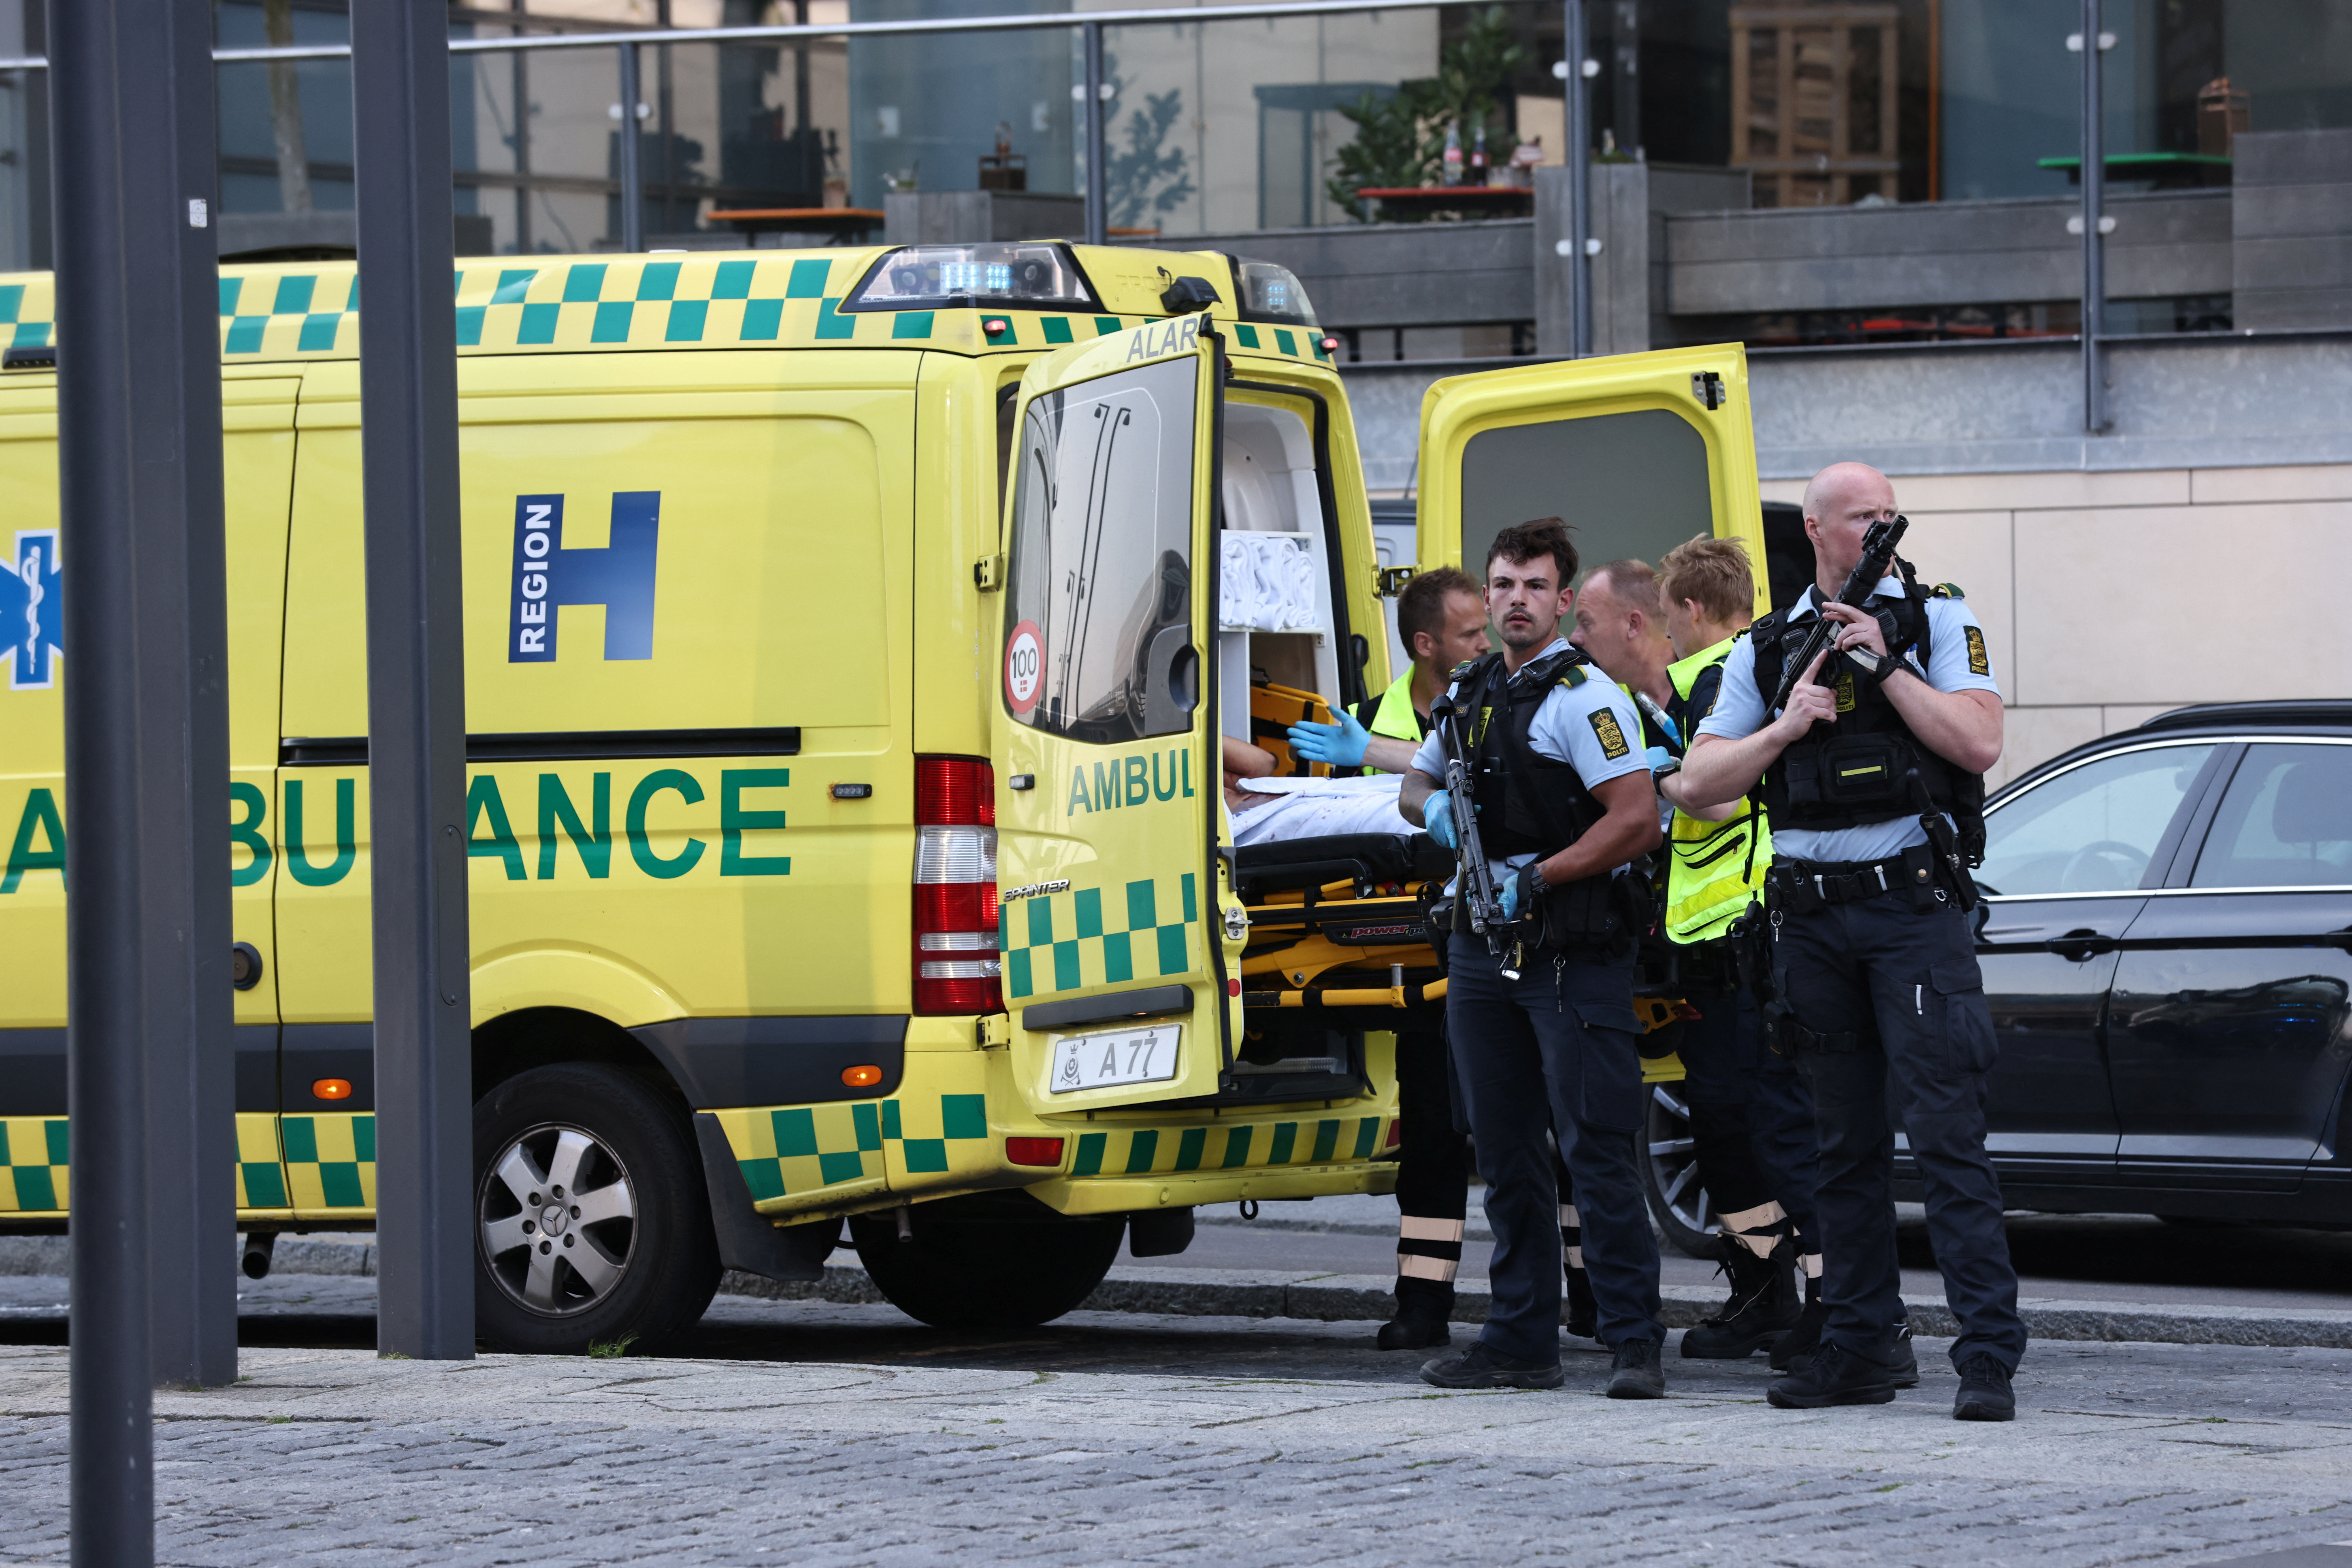 Una ambulancia y policías armados se paran frente al centro comercial de Field, después de que la policía danesa dijo que recibió informes de disparos, en Copenhague, Dinamarca, el 3 de julio de 2022.. Ritzau Scanpix/Olafur Steinar Gestsson via REUTERS 